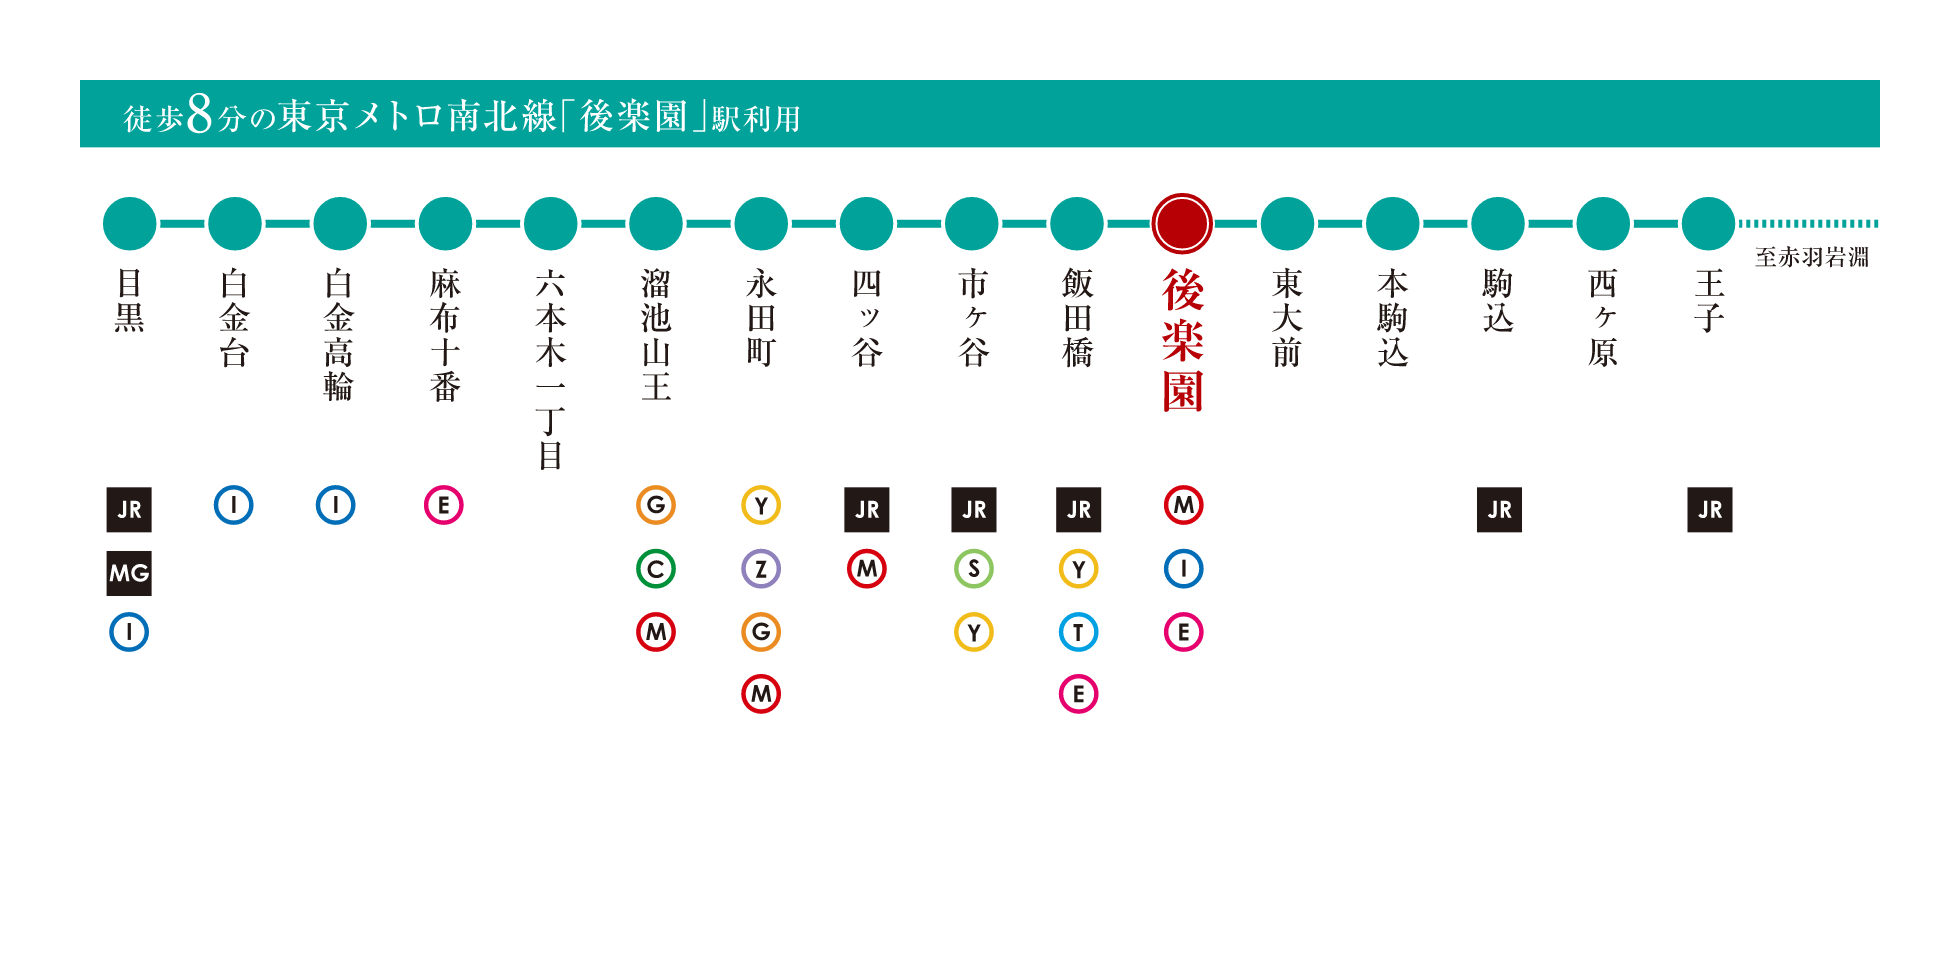 「東京メトロ南北線」路線図